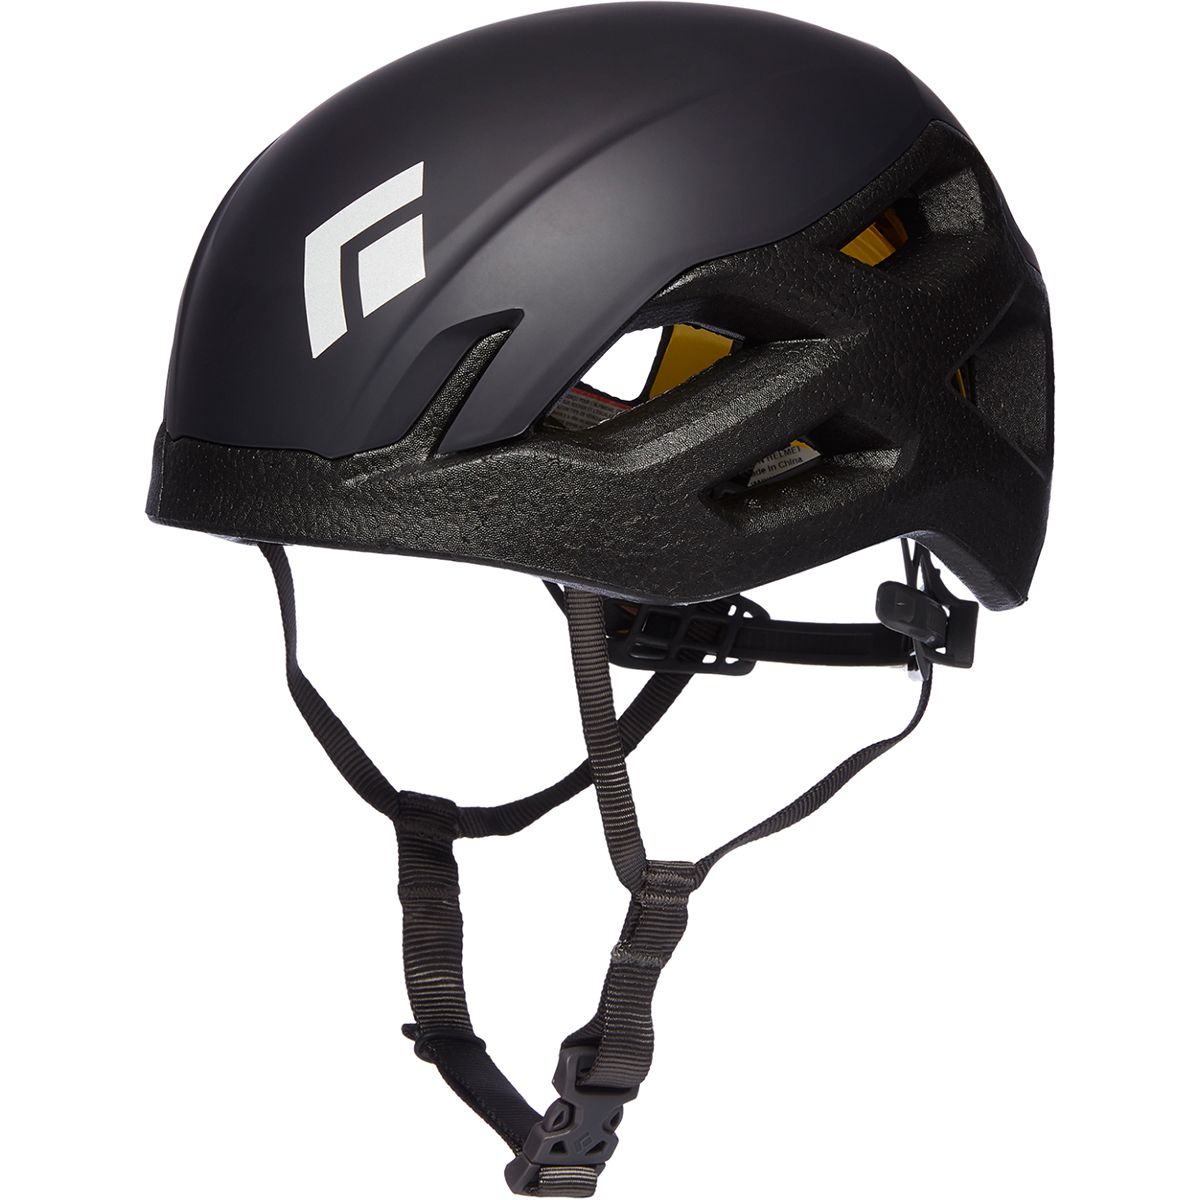 Black Diamond Vision MIPS Helmet